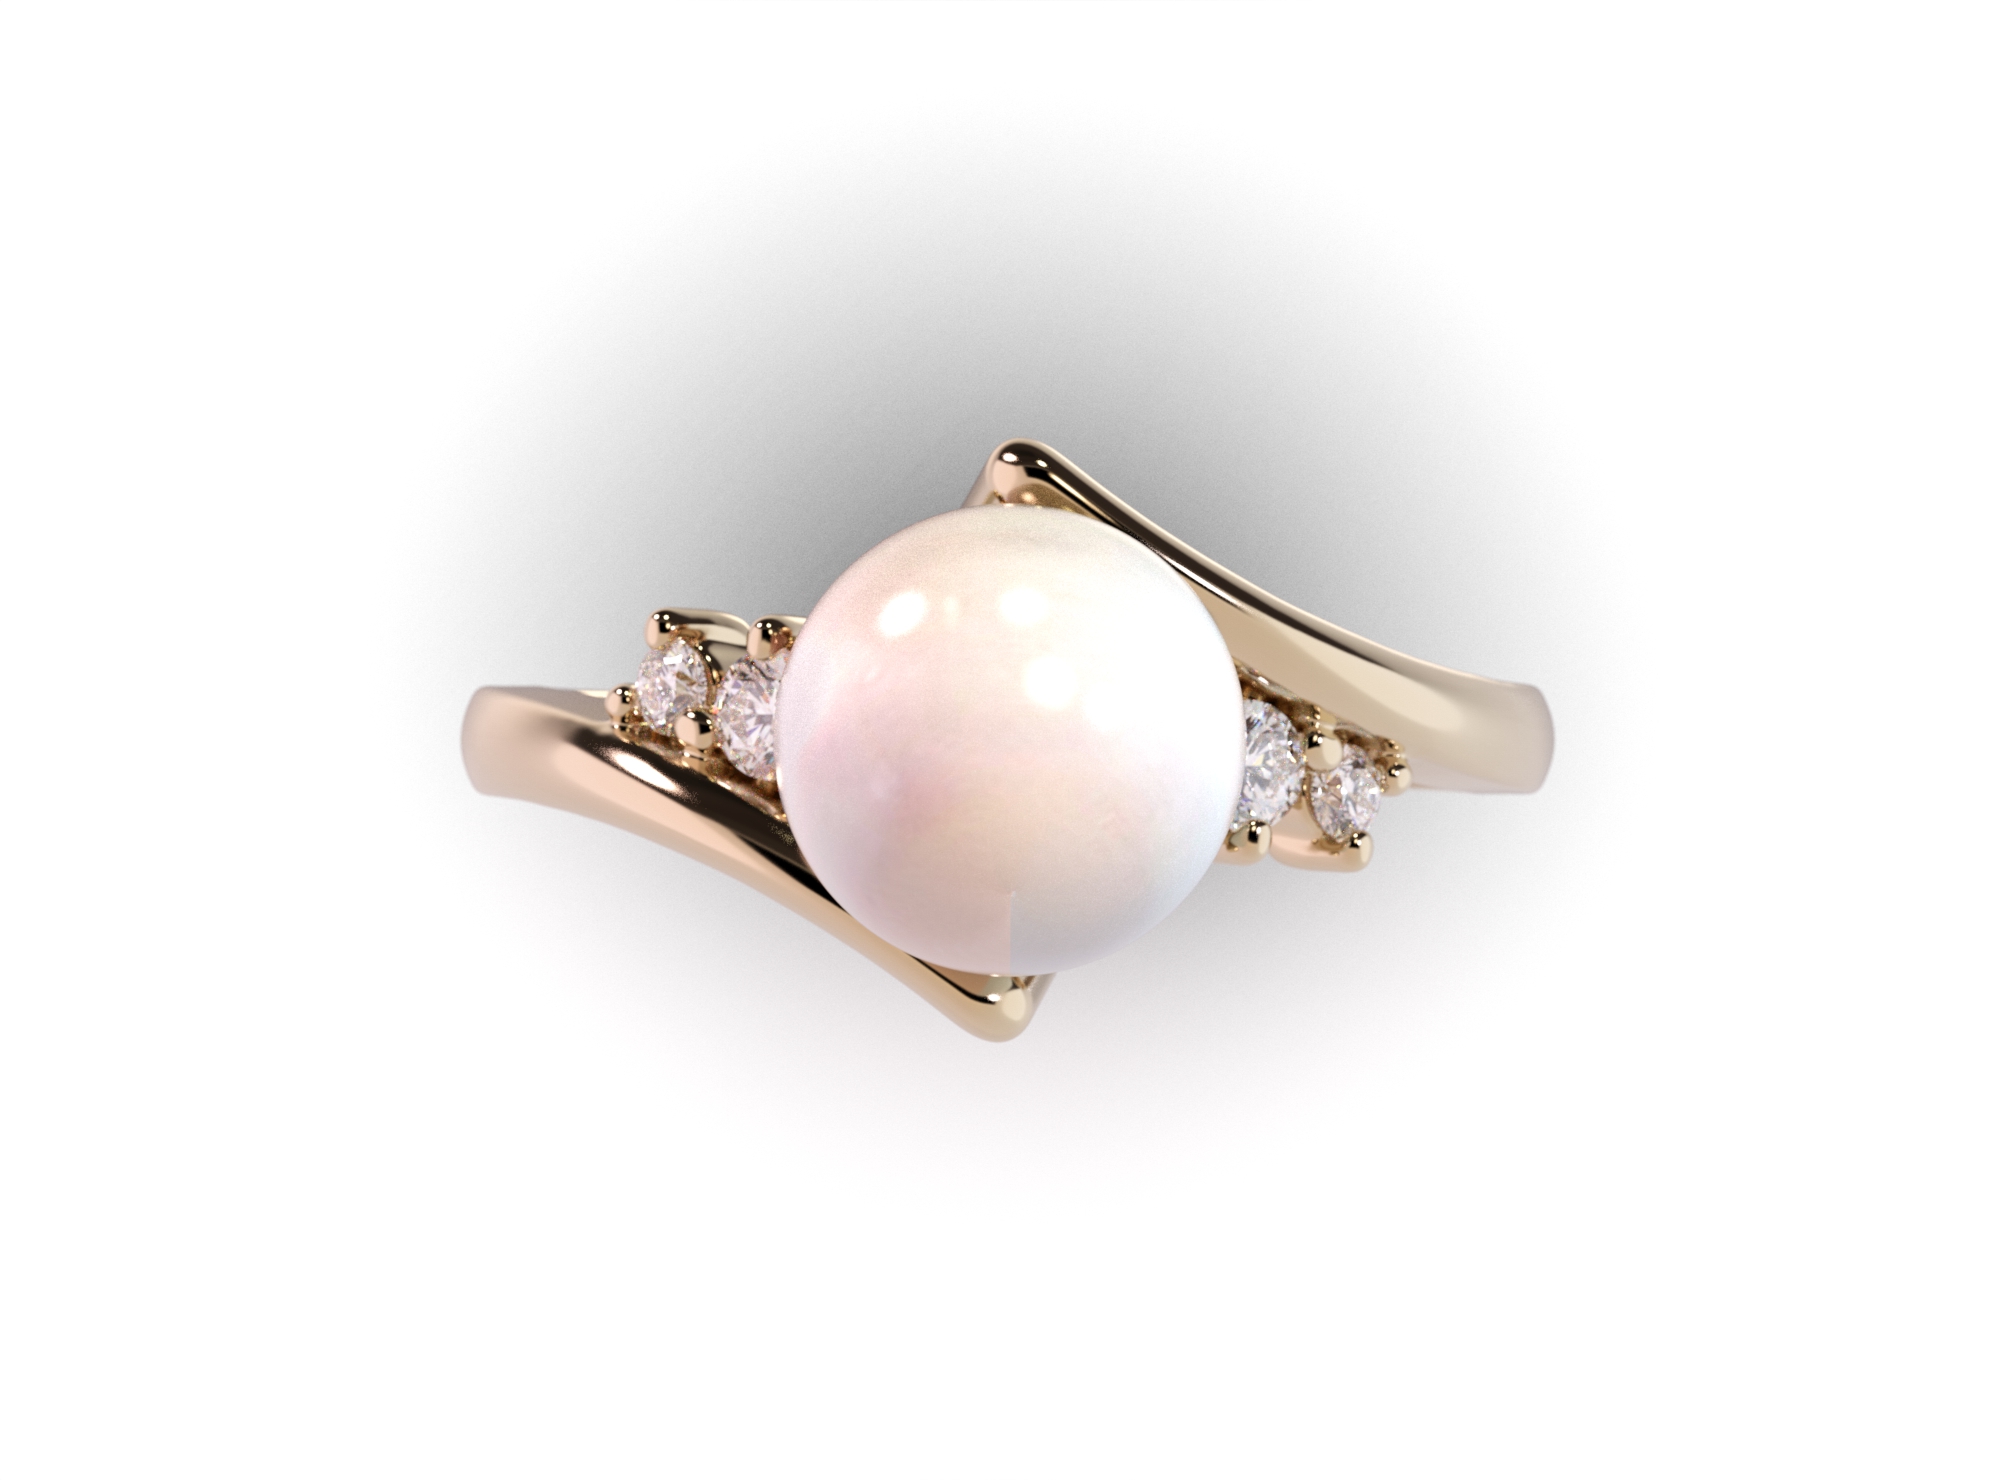 Cudowny pierścionek z perłą i diamentami w próbie złota 585 - widok z góry